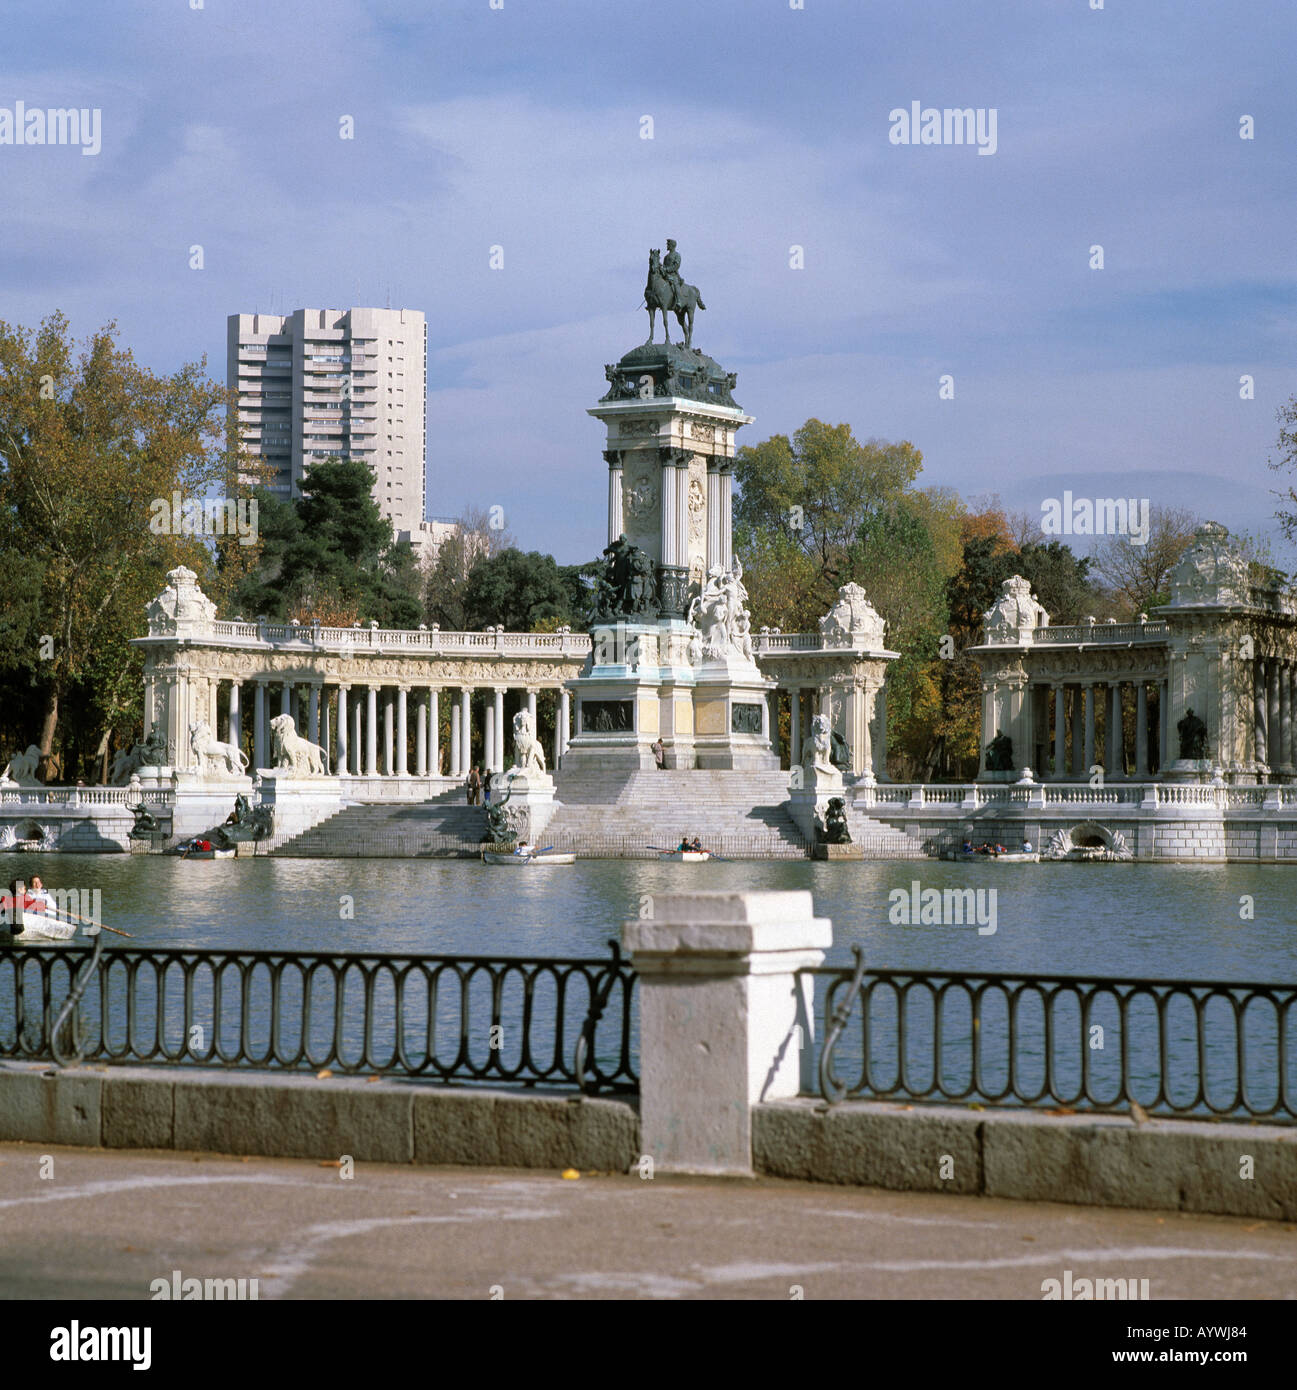 Parque del Retiro, Retiro-Park, Denkmal Koenig Alfons XII, Teich mit Ruderbooten, Hochhaus, herbstlich, Madrid Stock Photo